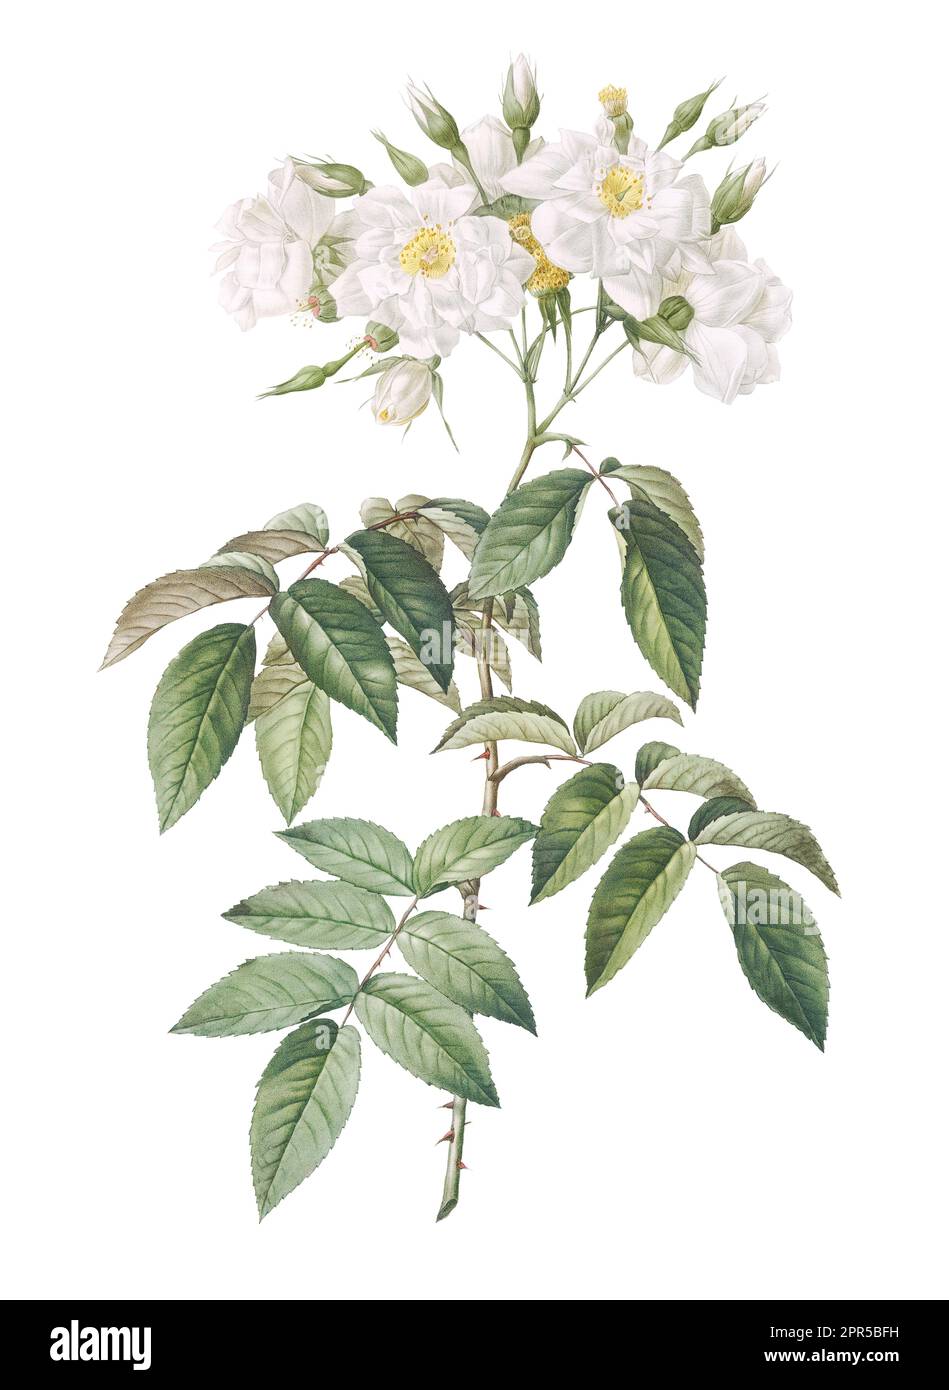 Ein Kunstdruck eines weißen Blumenstiels mit einem detaillierten und komplexen Muster aus Blütenblättern und Blättern Stockfoto